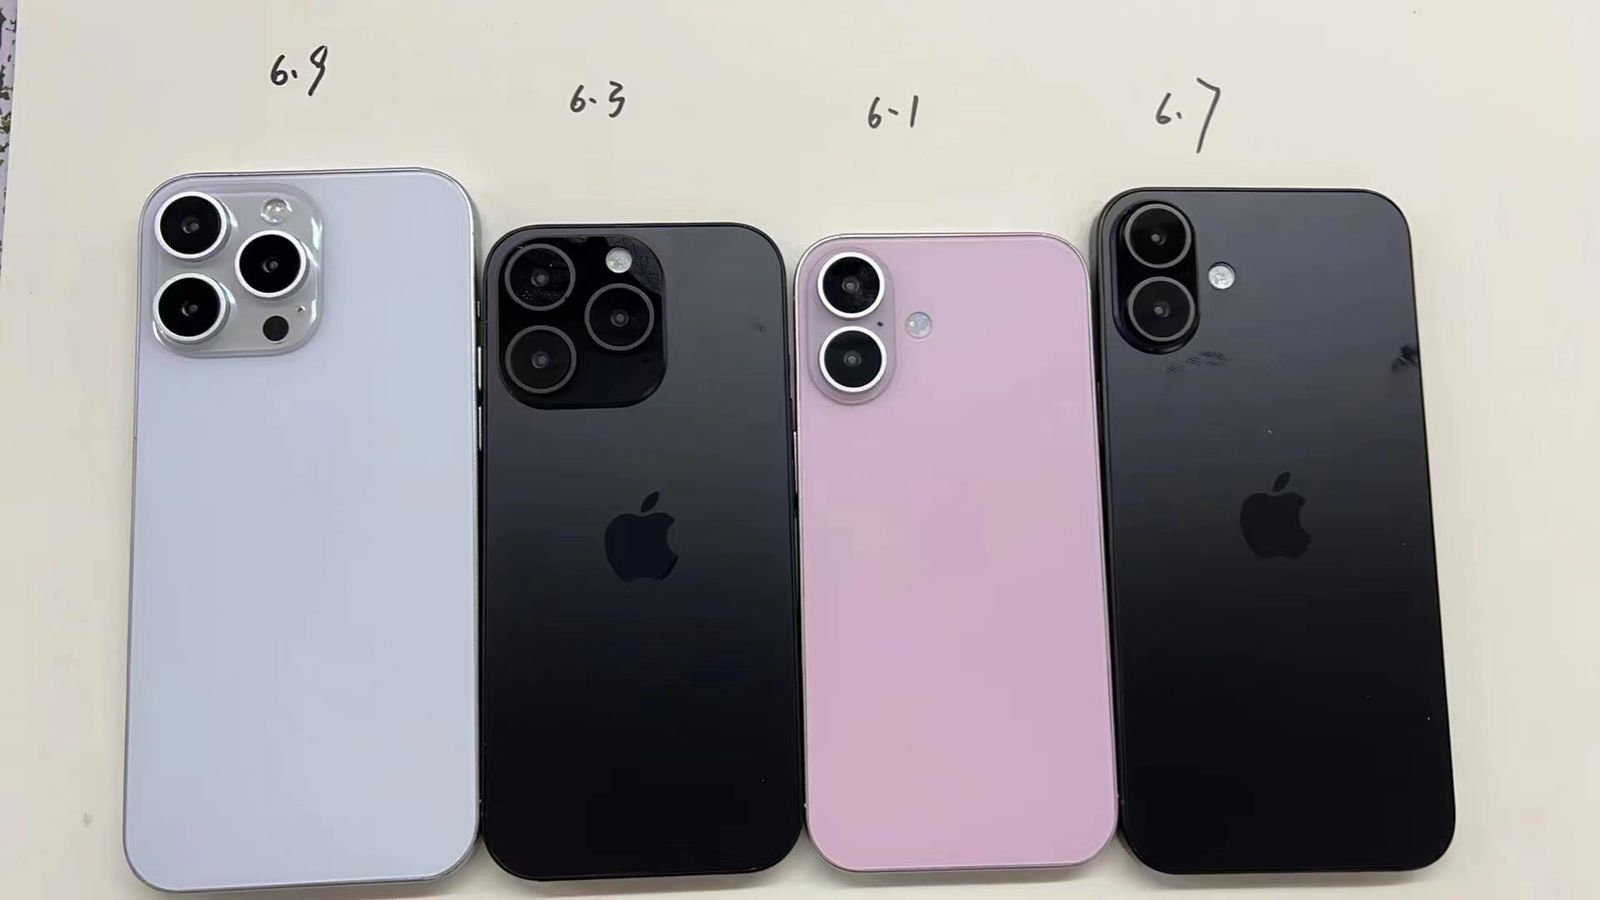 من iPhoneIslam.com، أربعة نماذج من أجهزة iPhone مرتبة من اليسار إلى اليمين: iPhone 13 pro max باللون الفضي، وiPhone 12 باللون الأسود، وiPhone 11 باللون الوردي، وiPhone XR باللون الأسود، كما يتم عرضها من الخلف على خلفية فاتحة.